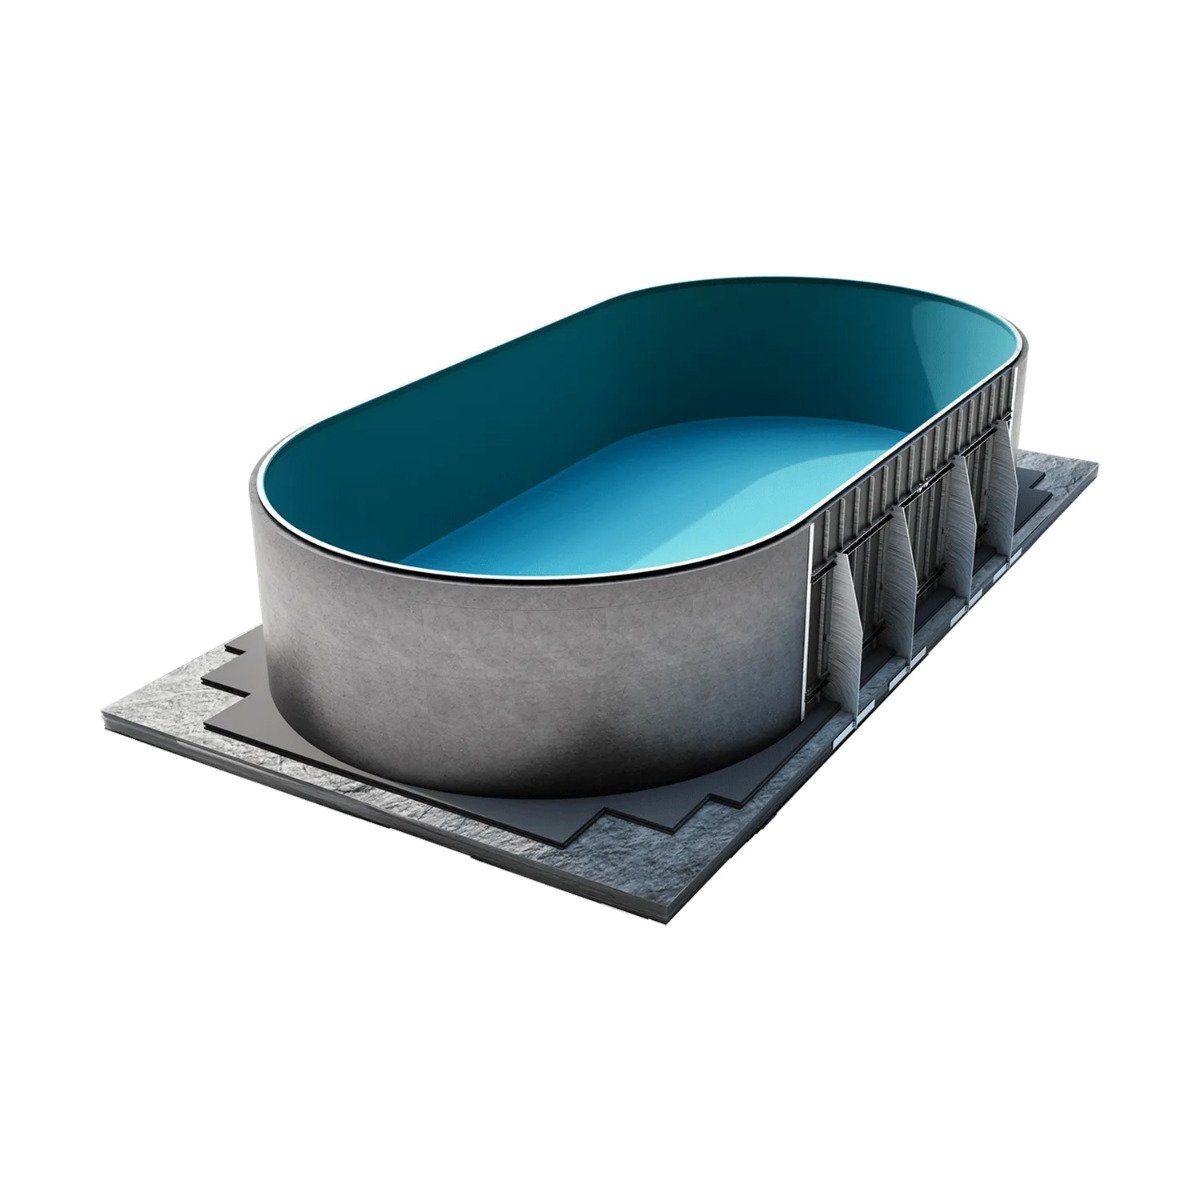 Paradies Pool Ovalpool, conZero Komplett System für Ovalformbecken 300x500x150cm